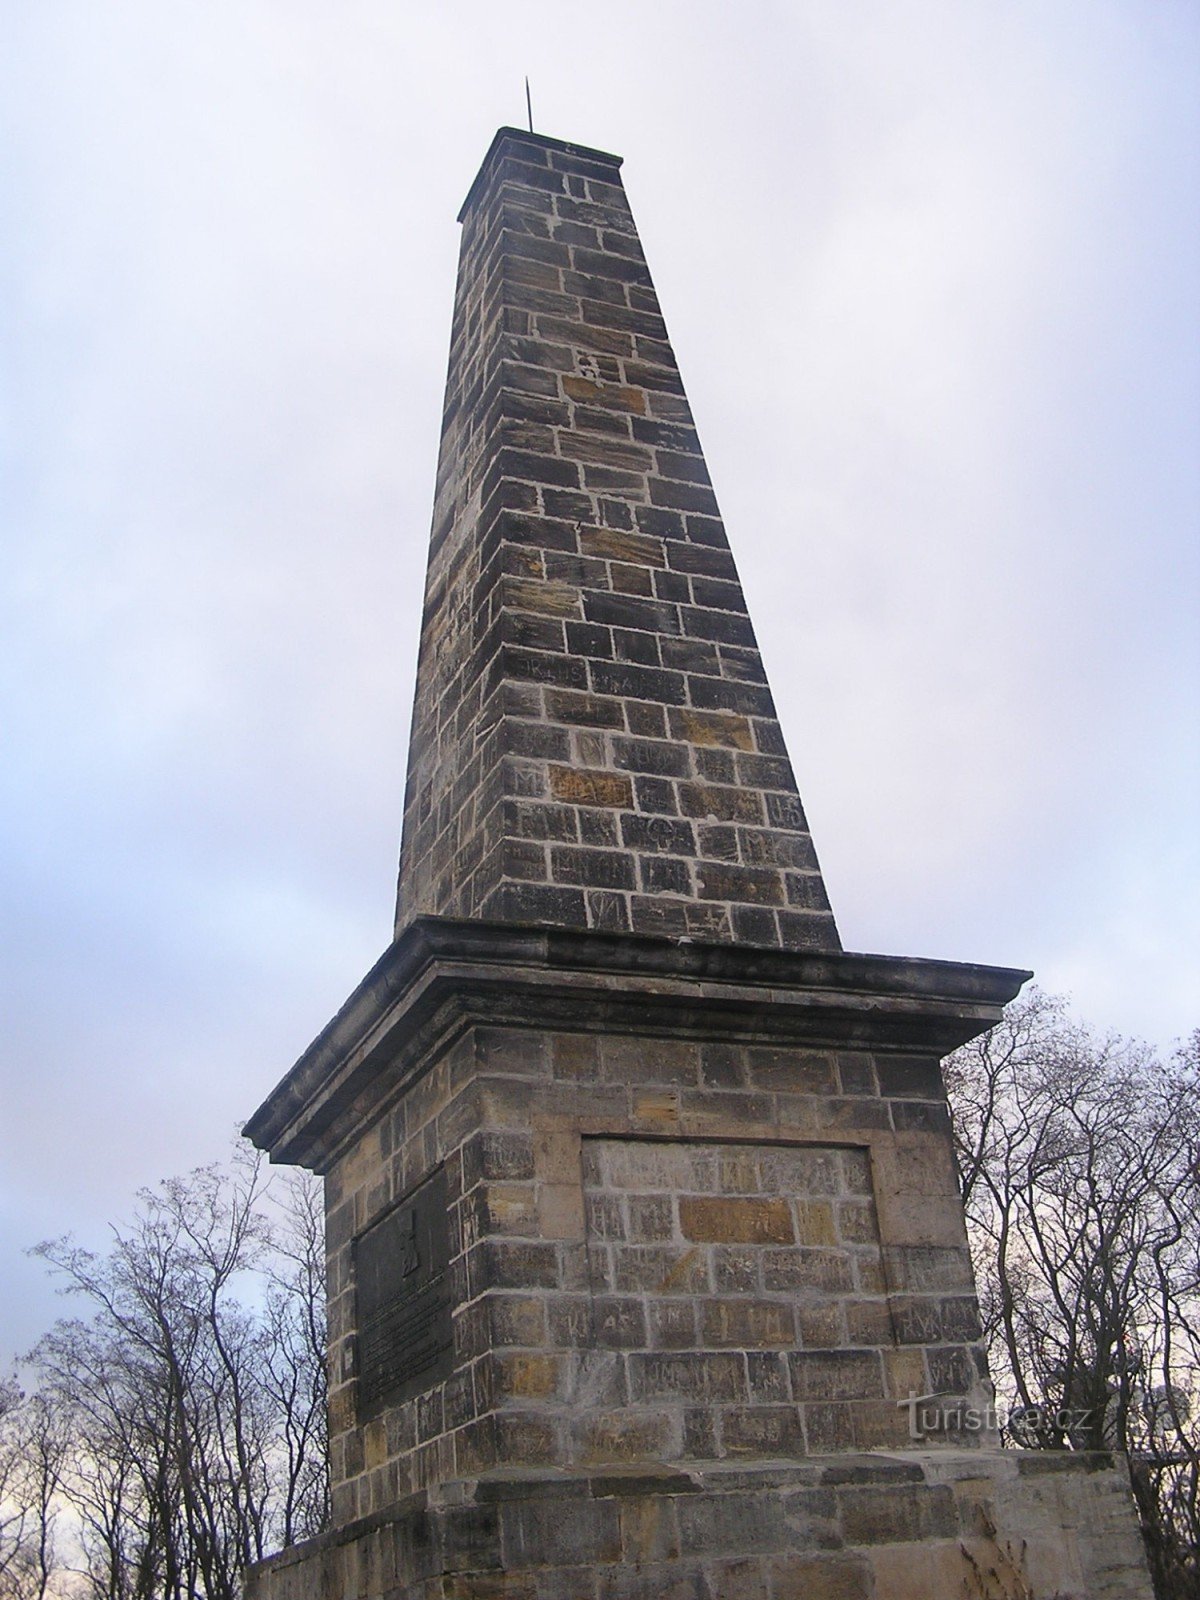 Đài tưởng niệm trận Kolín trên đồi Bedřichov - ngày 4.12.2007 tháng XNUMX năm XNUMX